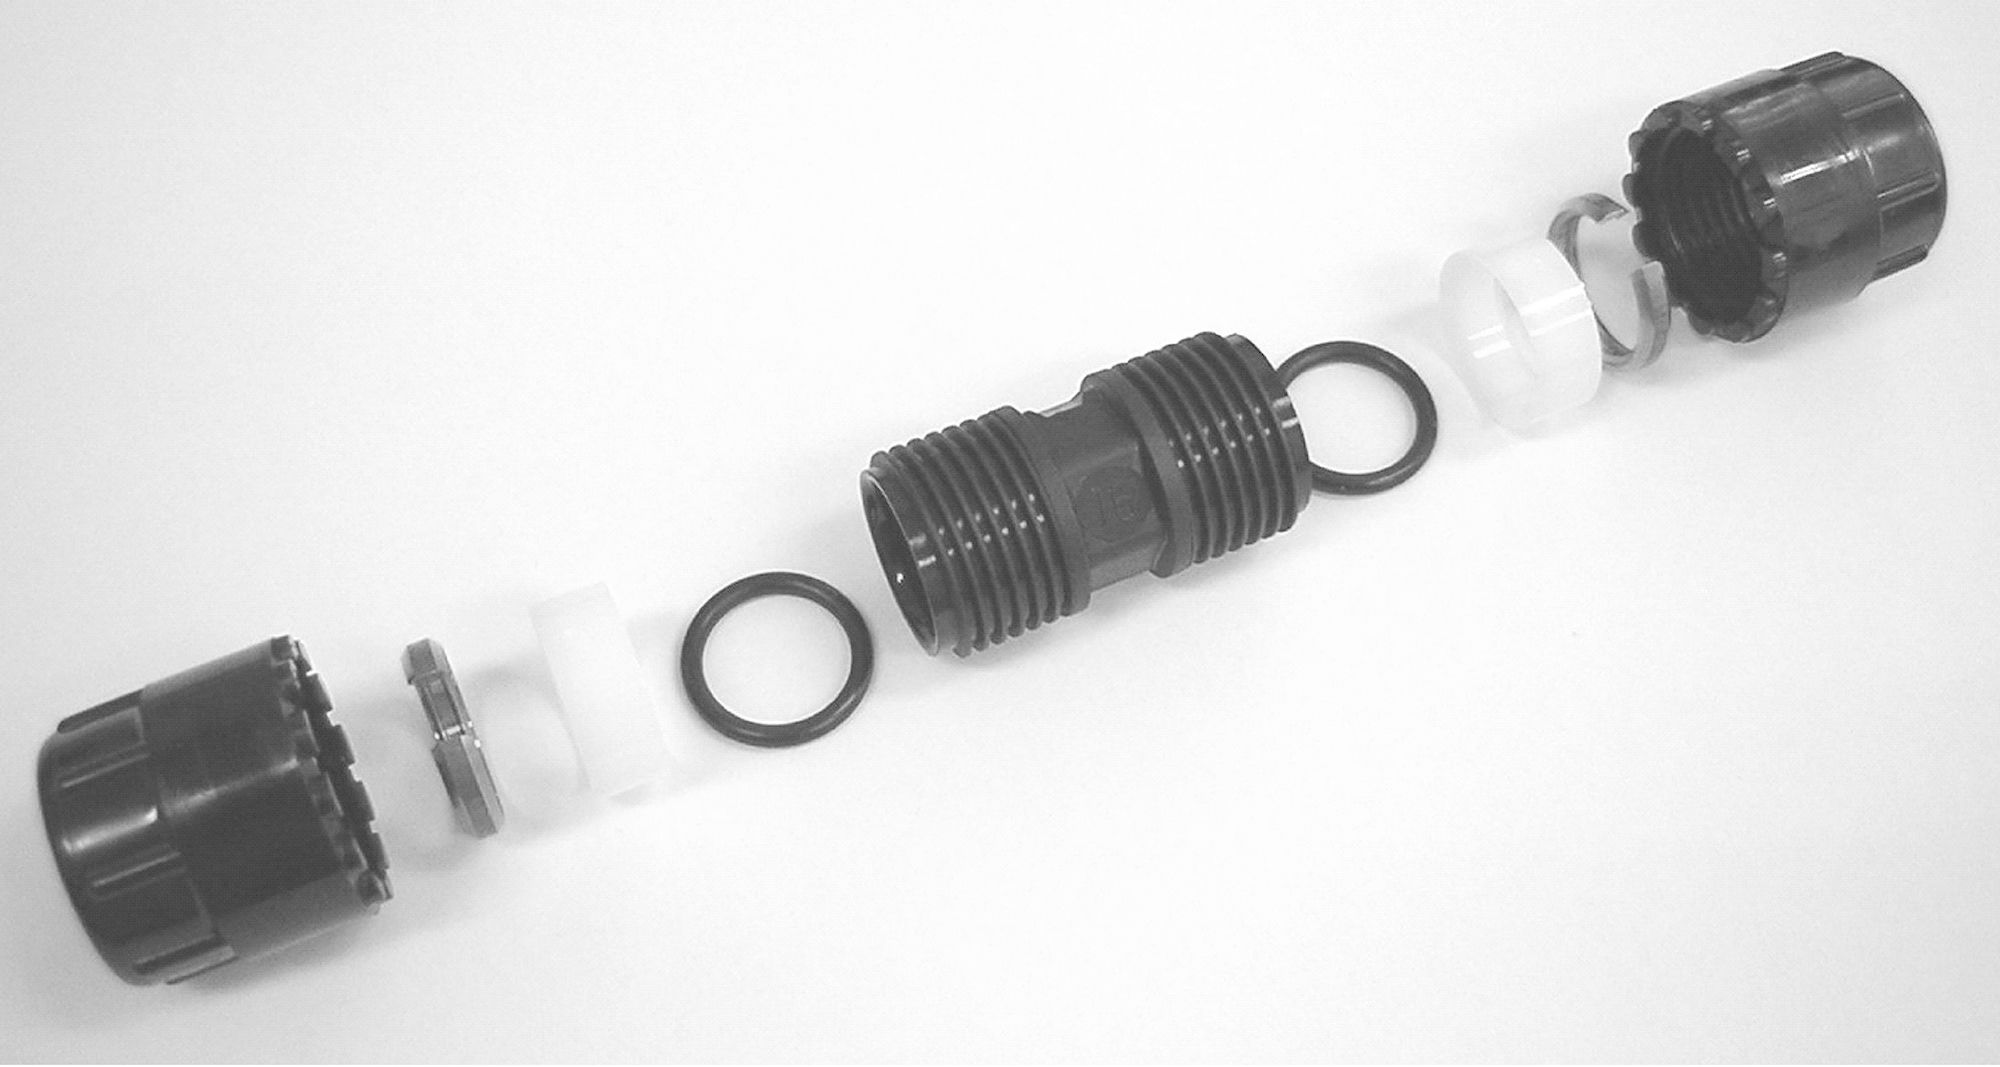 Simplast rechte koppeling 20 mm, zwart